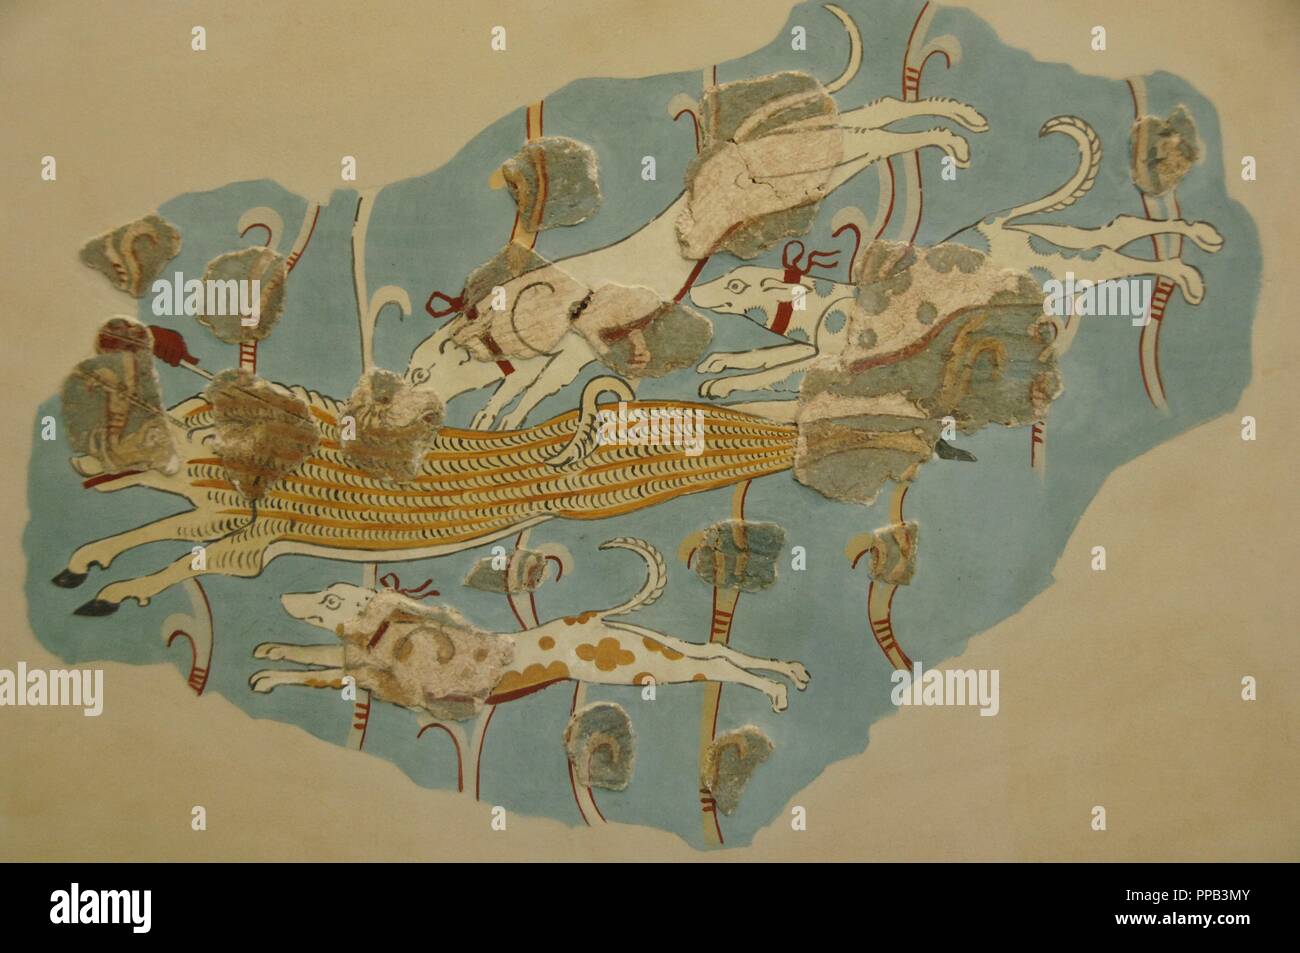 Wildschwein Jagd. Fresko zwischen 14. und 13. Jahrhundert v. Chr. datiert. Zweite Palast von Tiryns Nationalen Archäologischen Museum. Athen. Griechenland. Stockfoto